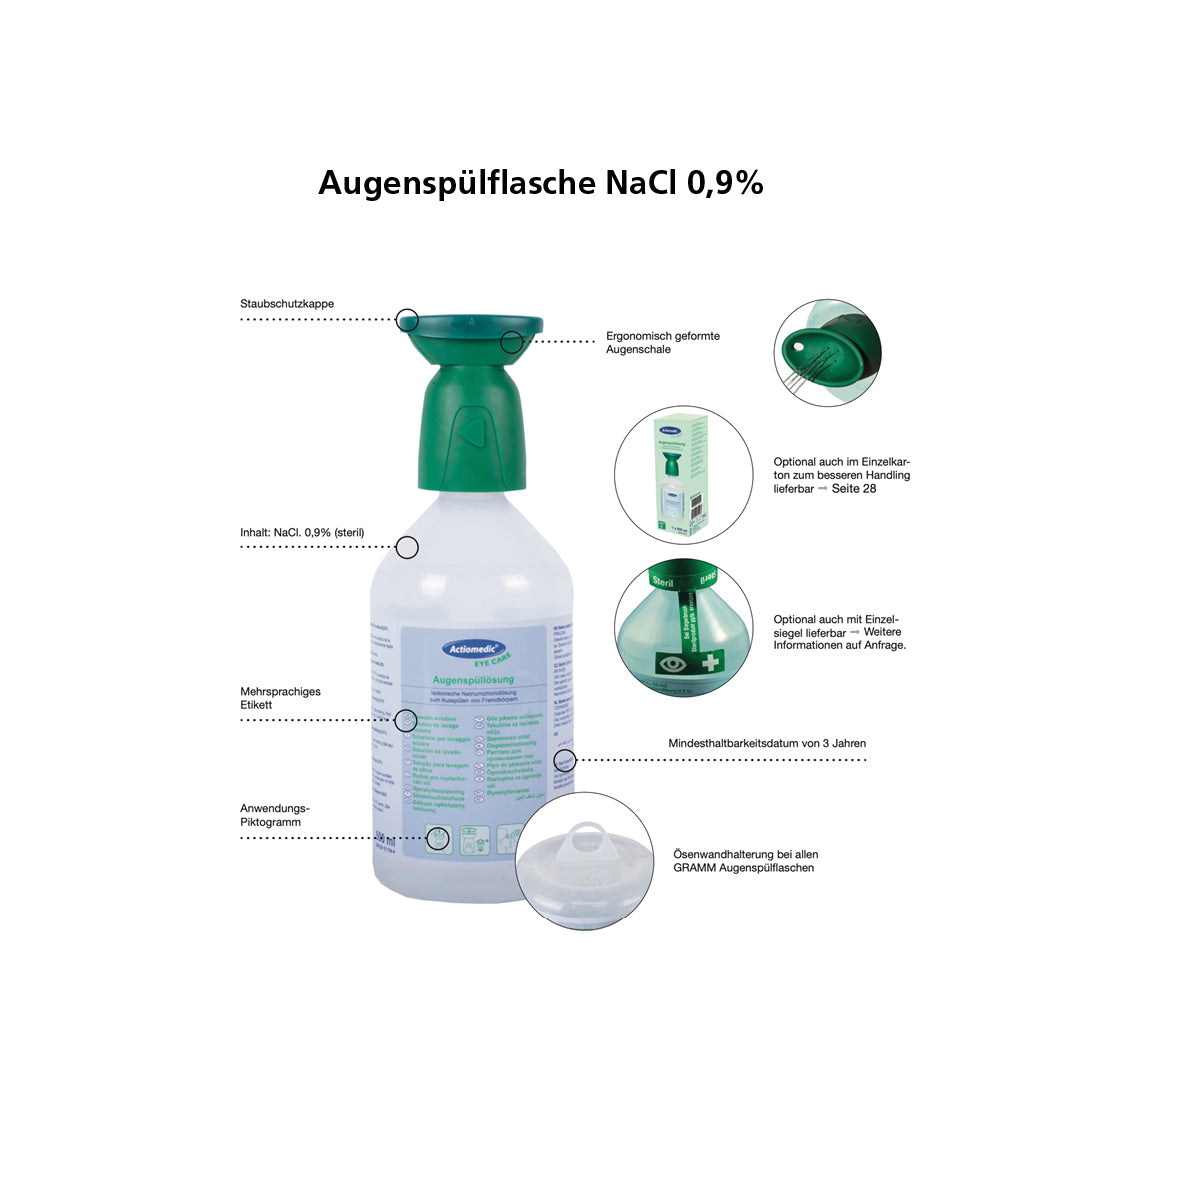 Gürteltasche, für 250 ml Augenspülflaschen, grün, 20 x 7 cm, leer